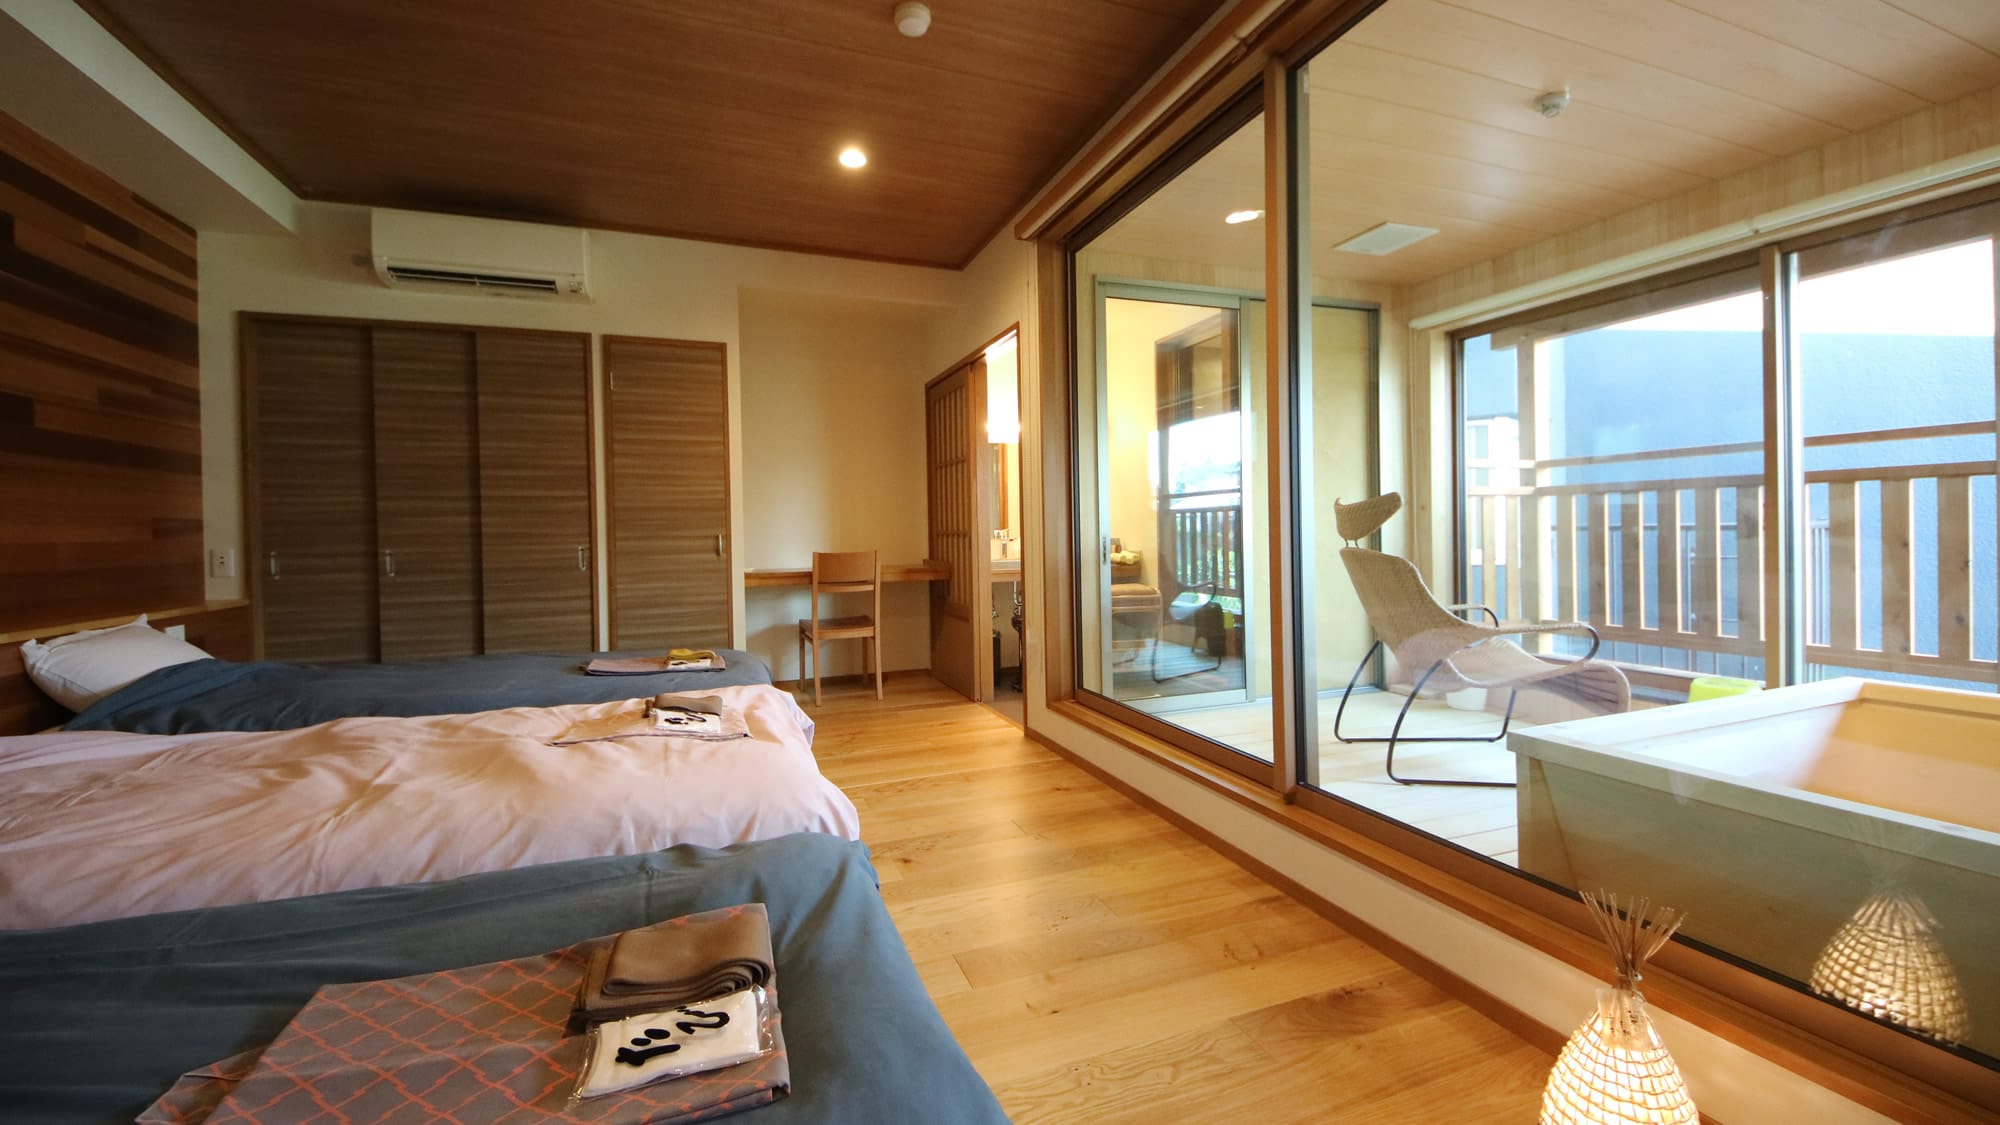 [ห้องพิเศษ] บ้านชินาโนะ [ยูกิฮานะ] ห้องญี่ปุ่นและตะวันตกพร้อมบ่อน้ำพุร้อนกลางแจ้ง